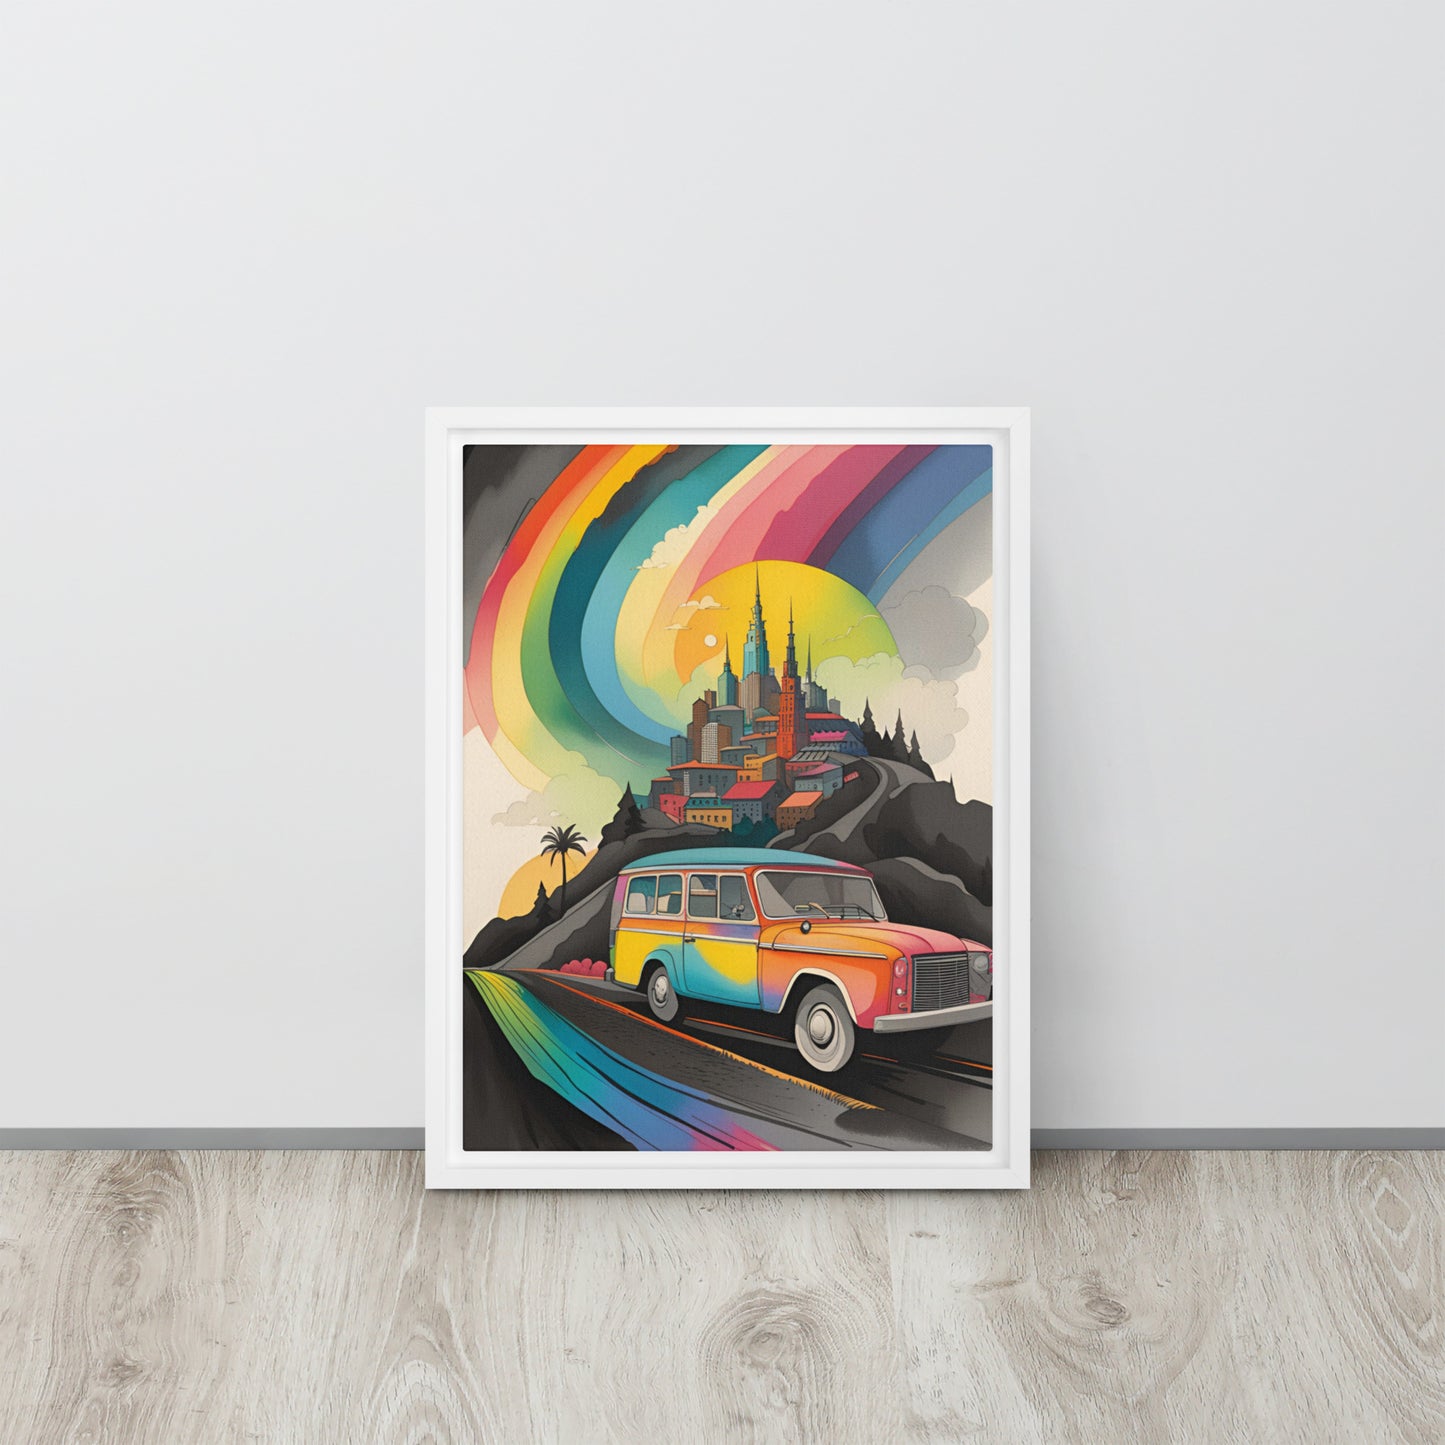 Rainbow City - Framed Canvas